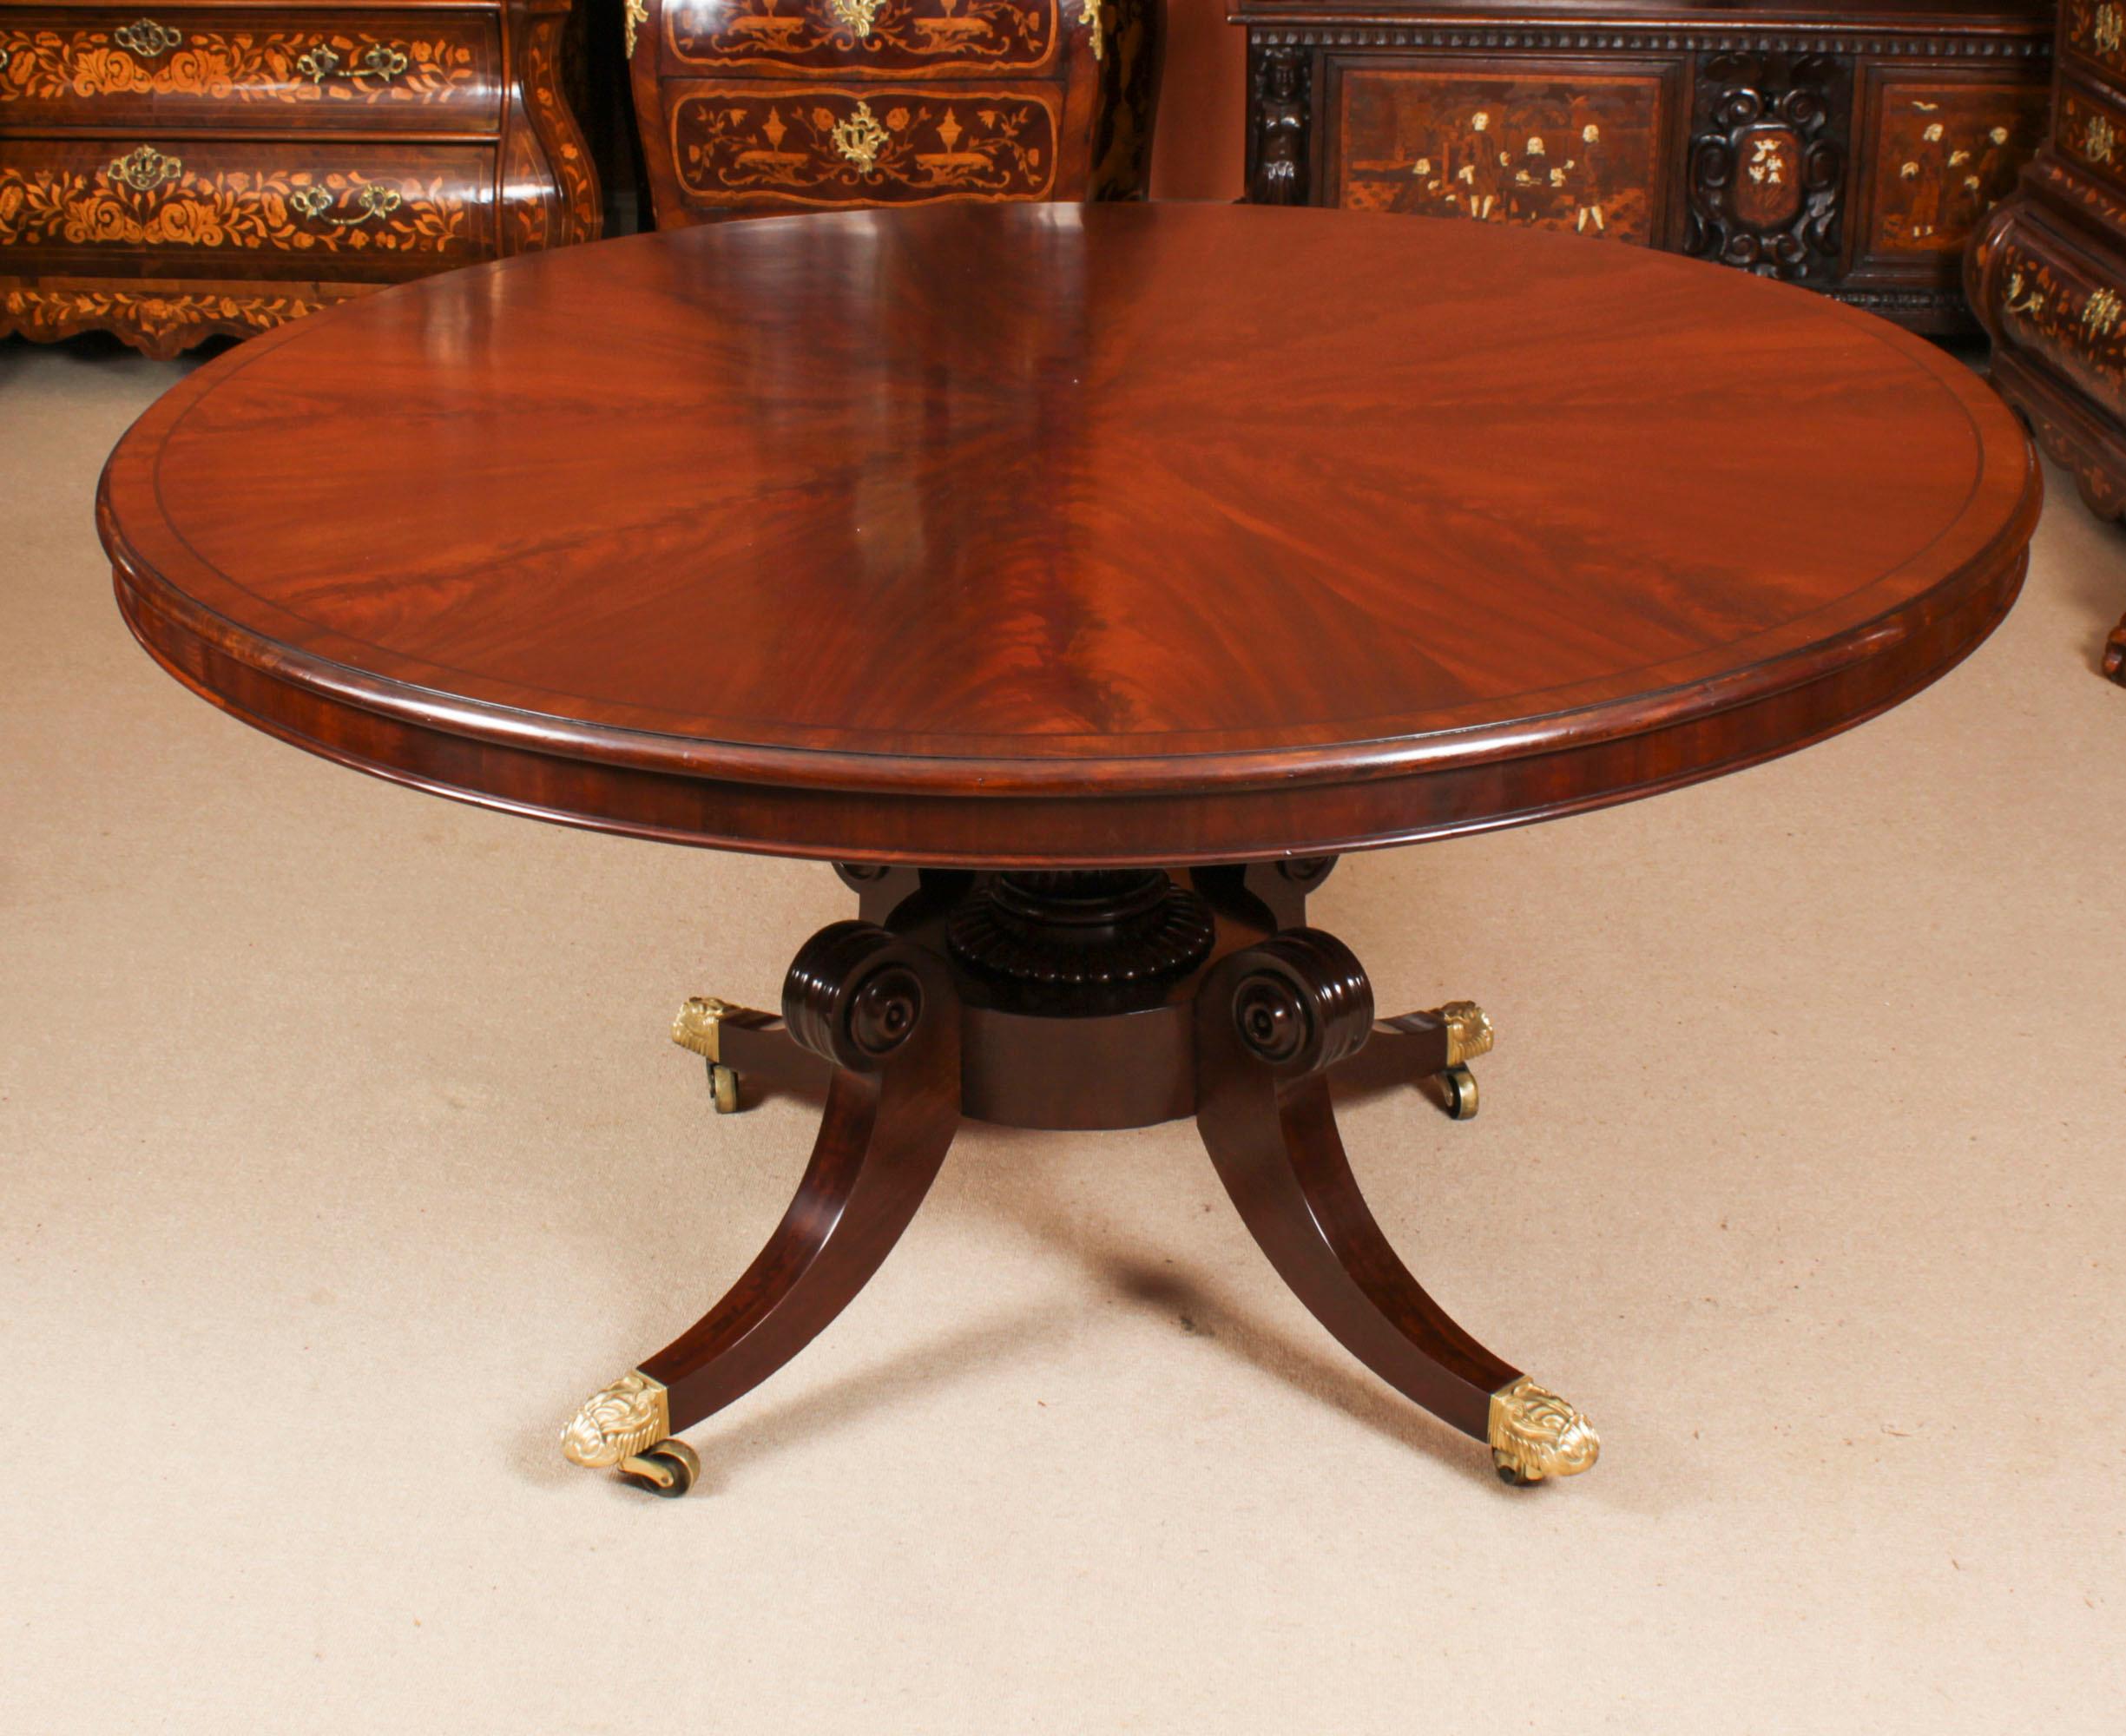 Un superbe objet ancien de la famille William IV  Table de petit déjeuner / table de toilette, à la manière de Gillows, datant d'environ 1830.

Le beau plateau circulaire en acajou flammé figuré repose sur une colonne en acajou tournée à la main